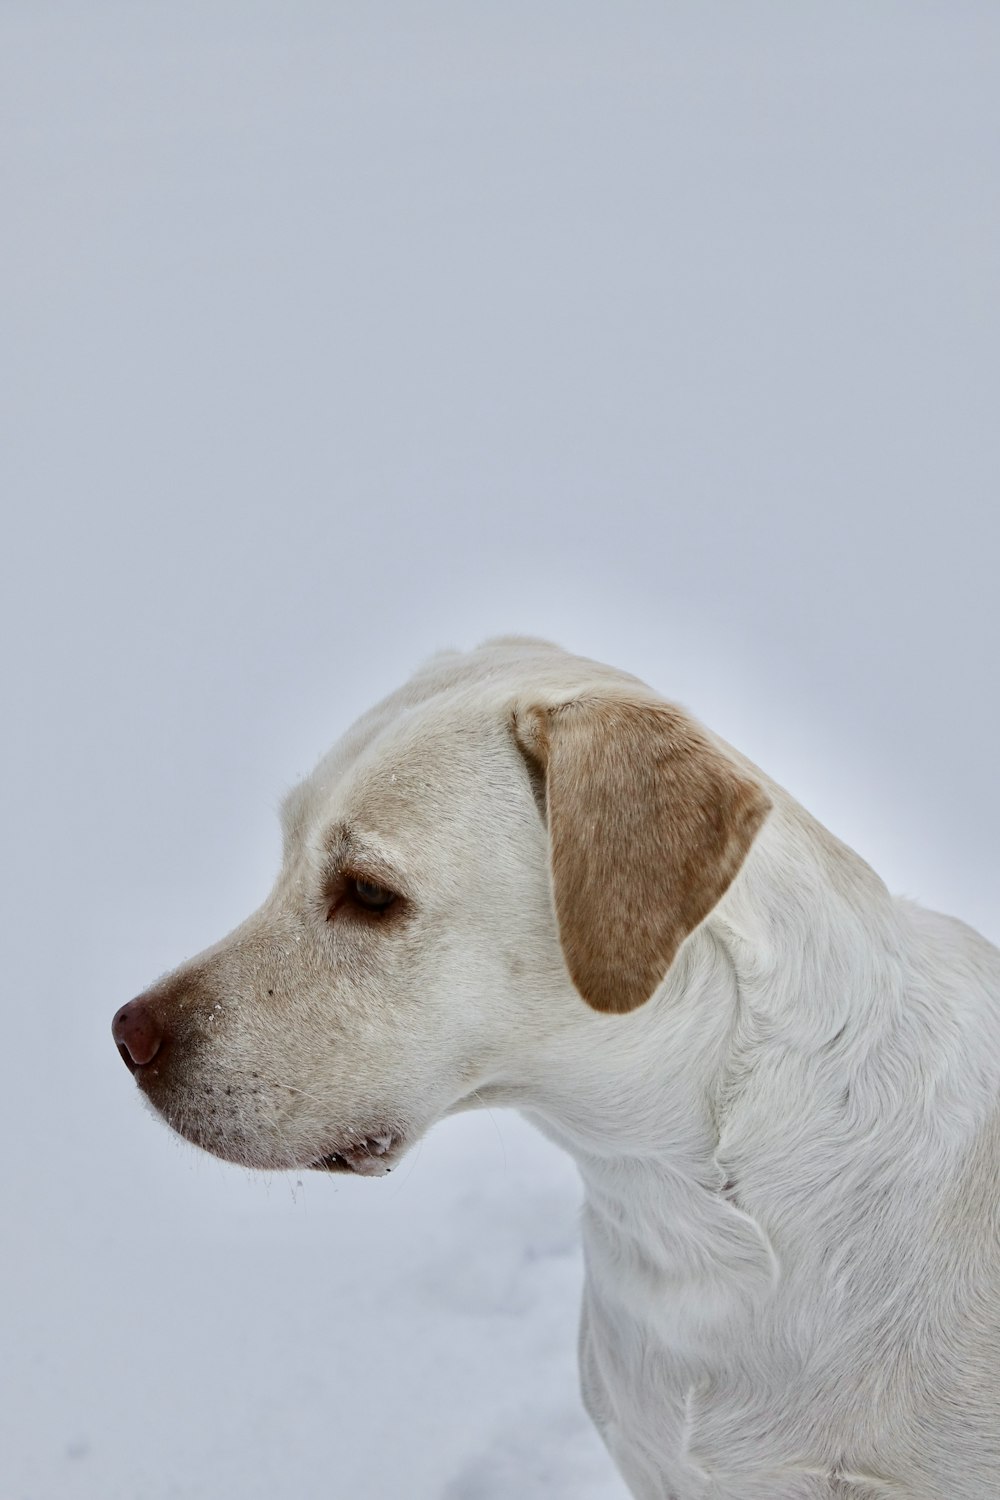 white short coated dog lying on white surface